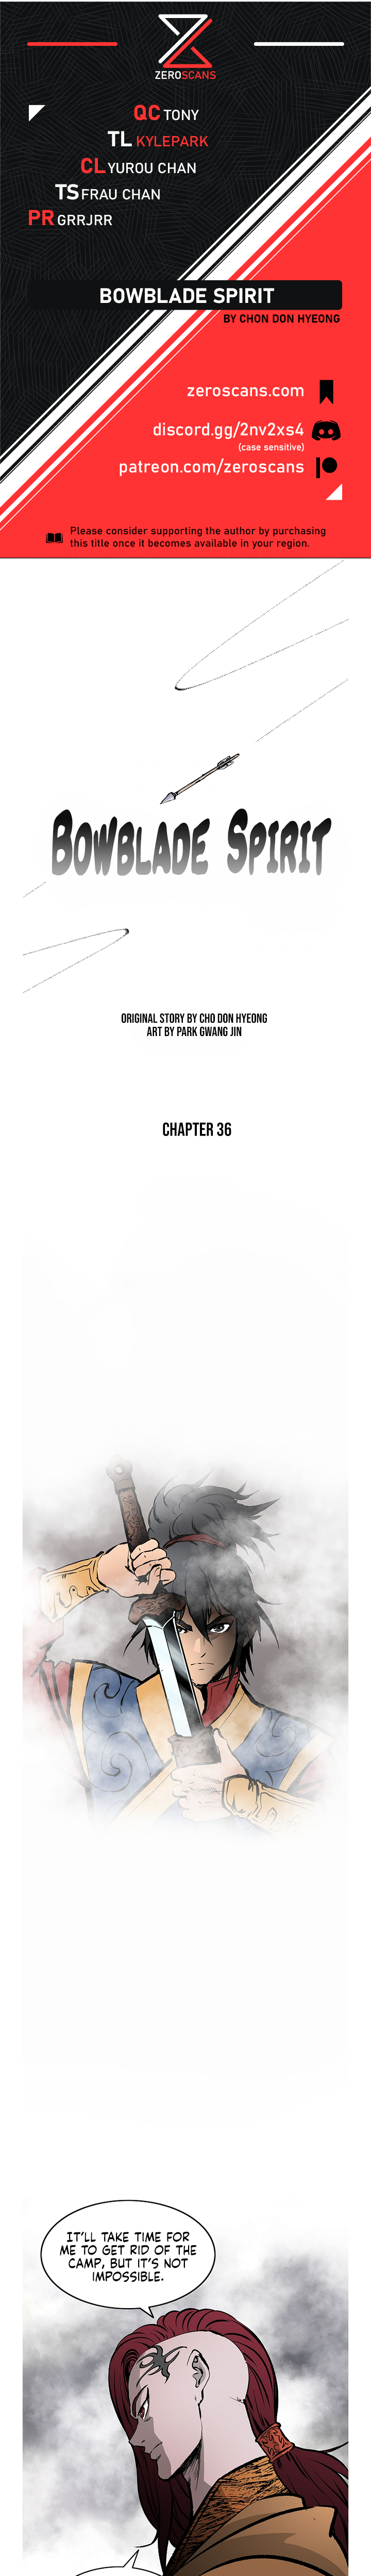 Bowblade Spirit - Chapter 3724 - Image 1